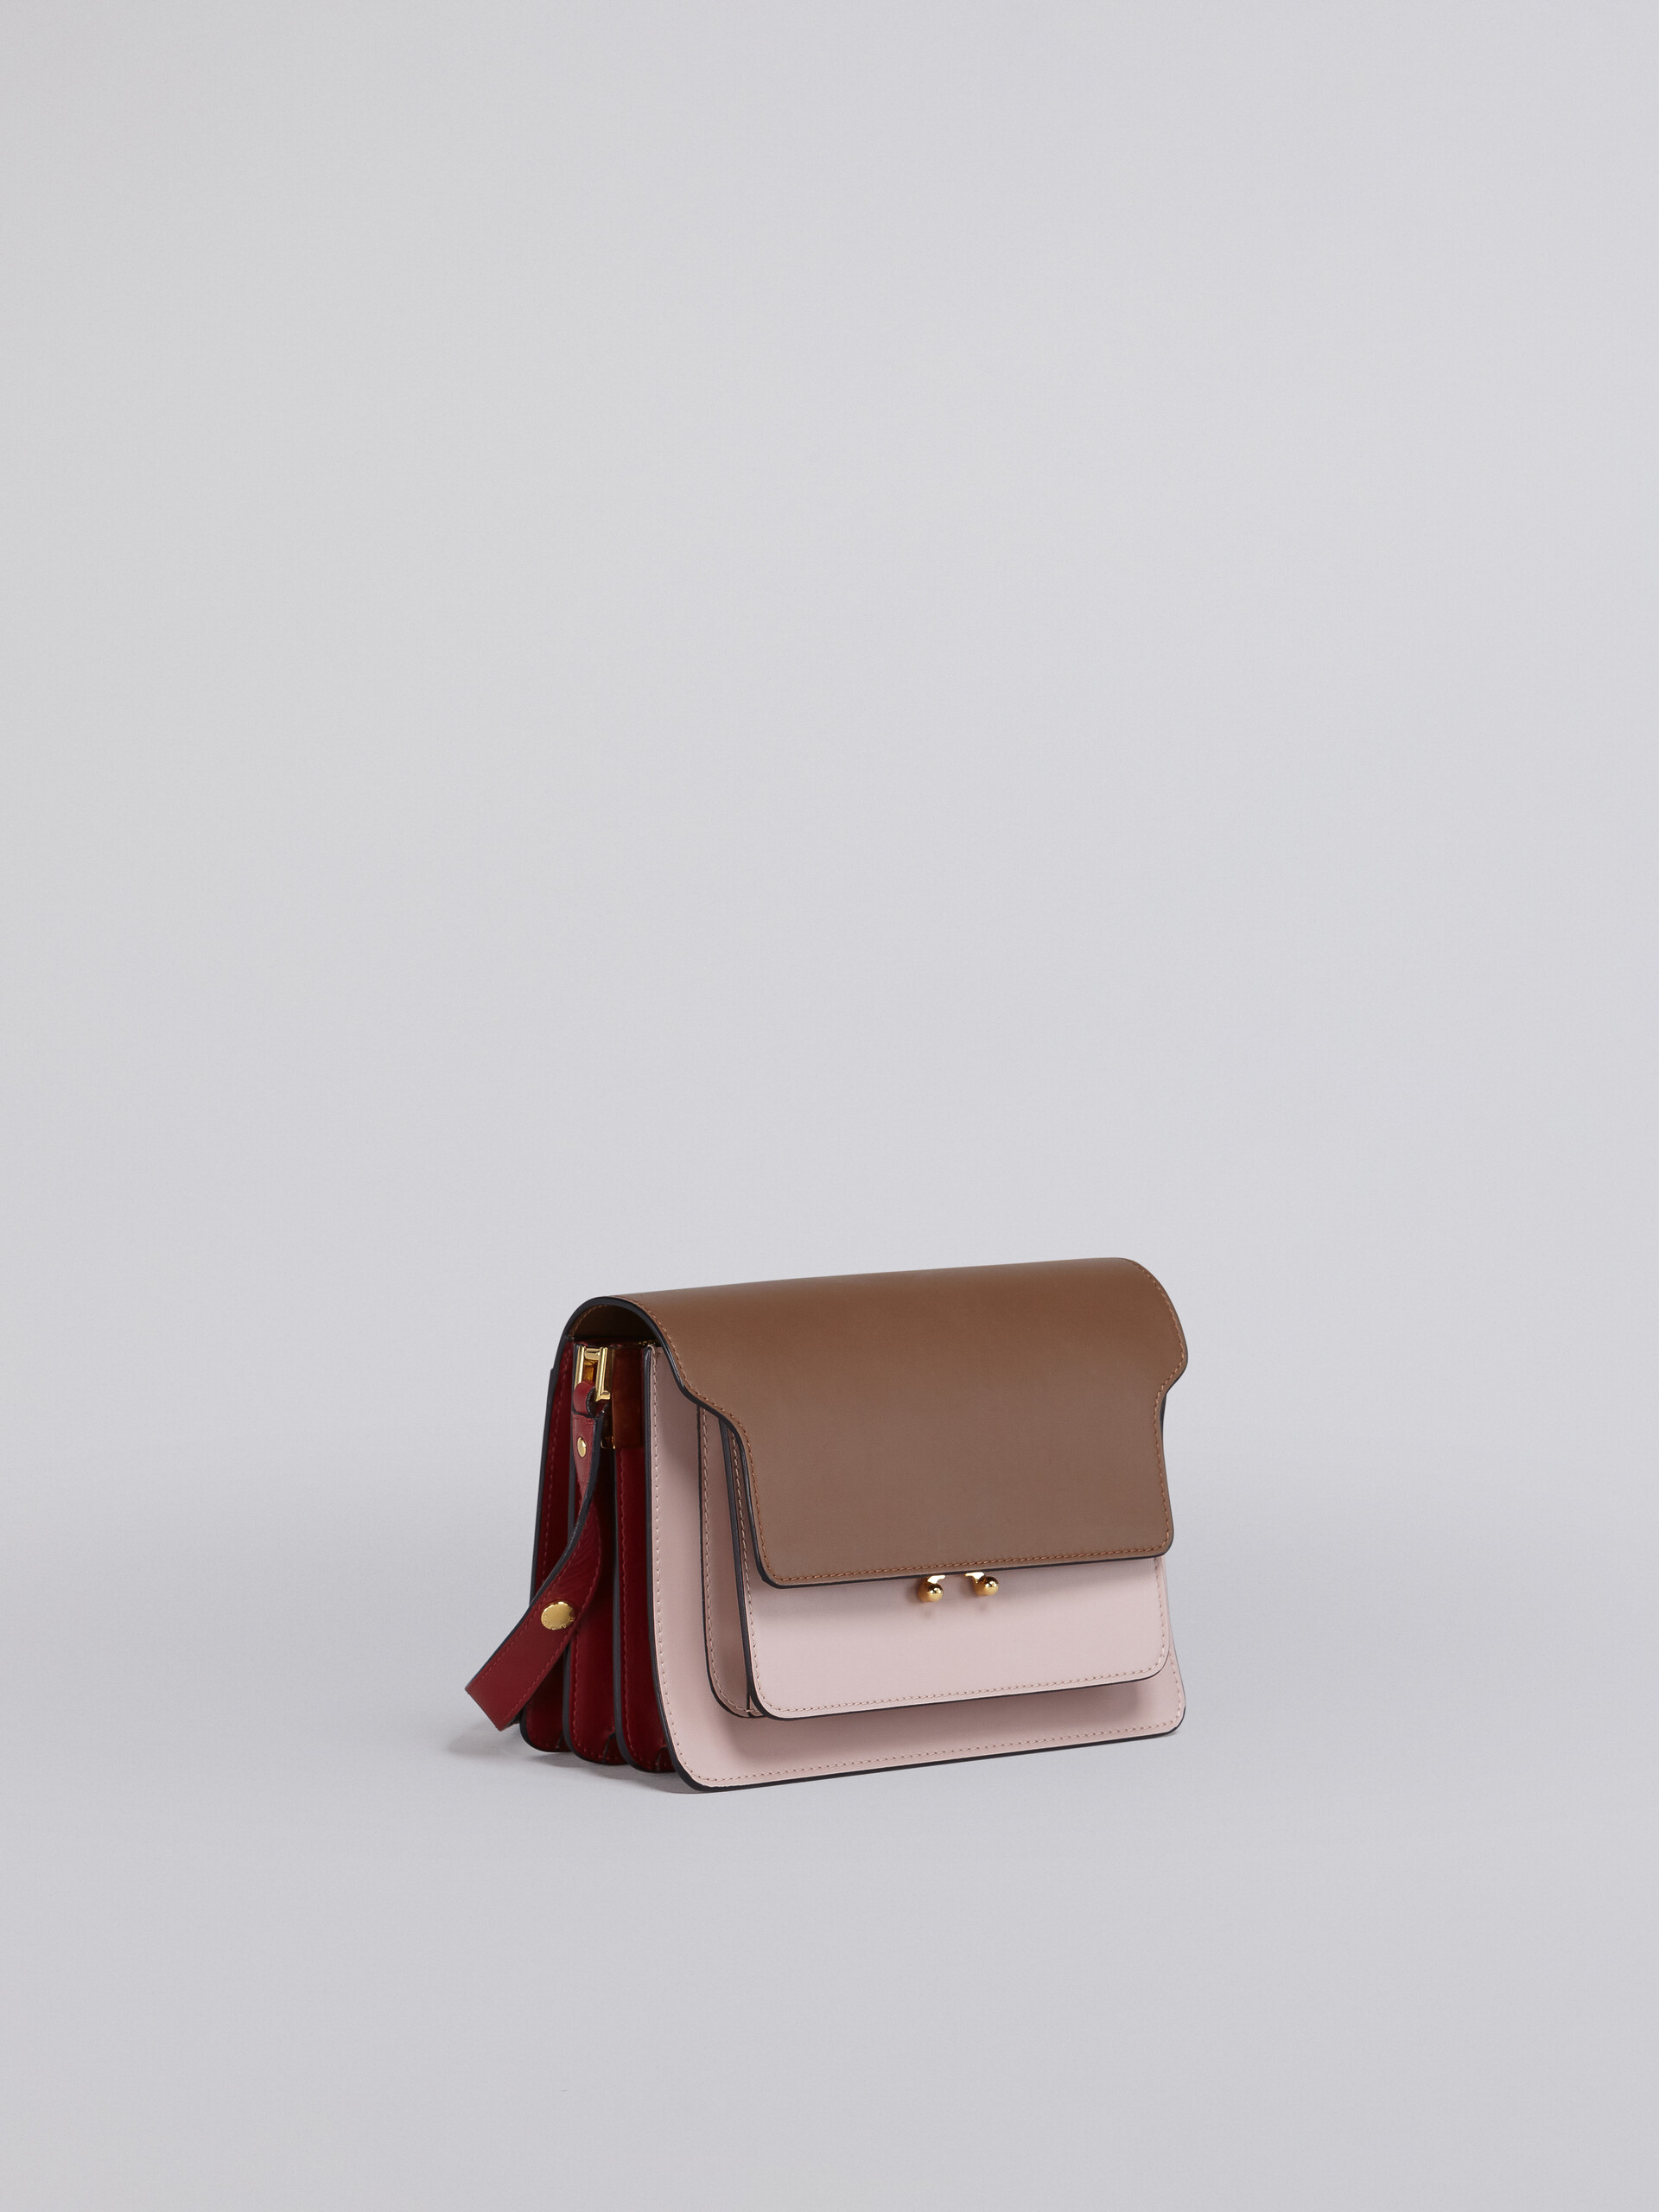 TRUNK bag in vitello liscio beige rosa e rosso - Borse a spalla - Image 5